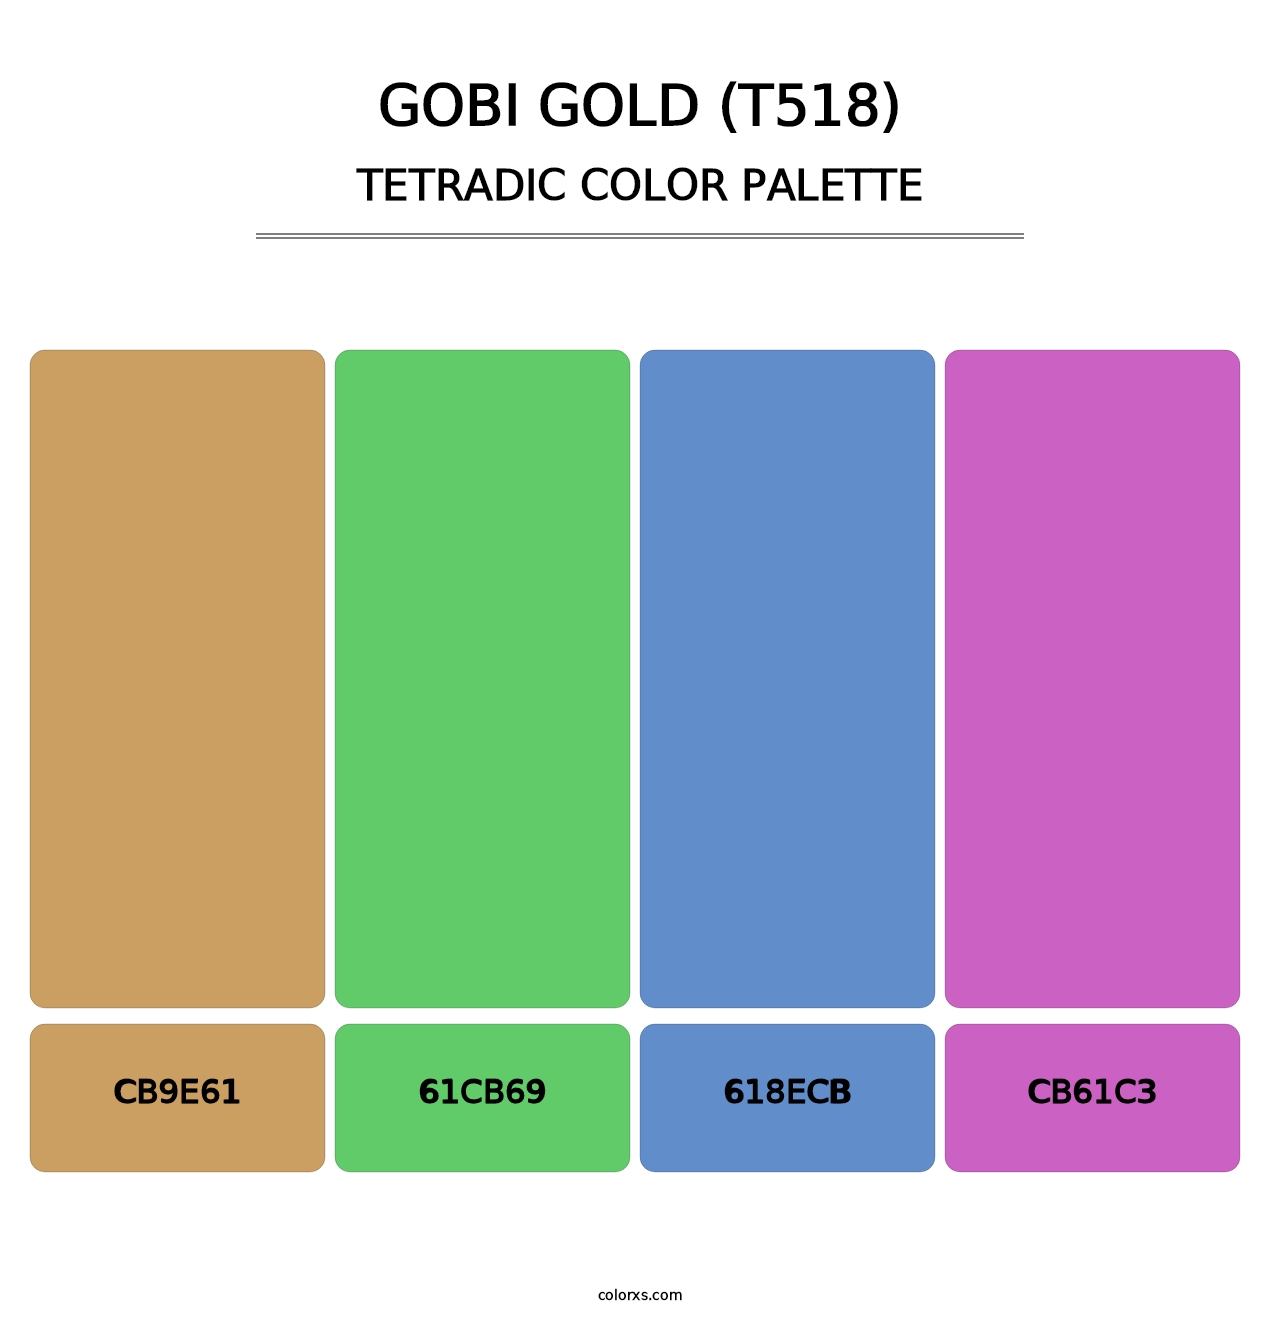 Gobi Gold (T518) - Tetradic Color Palette